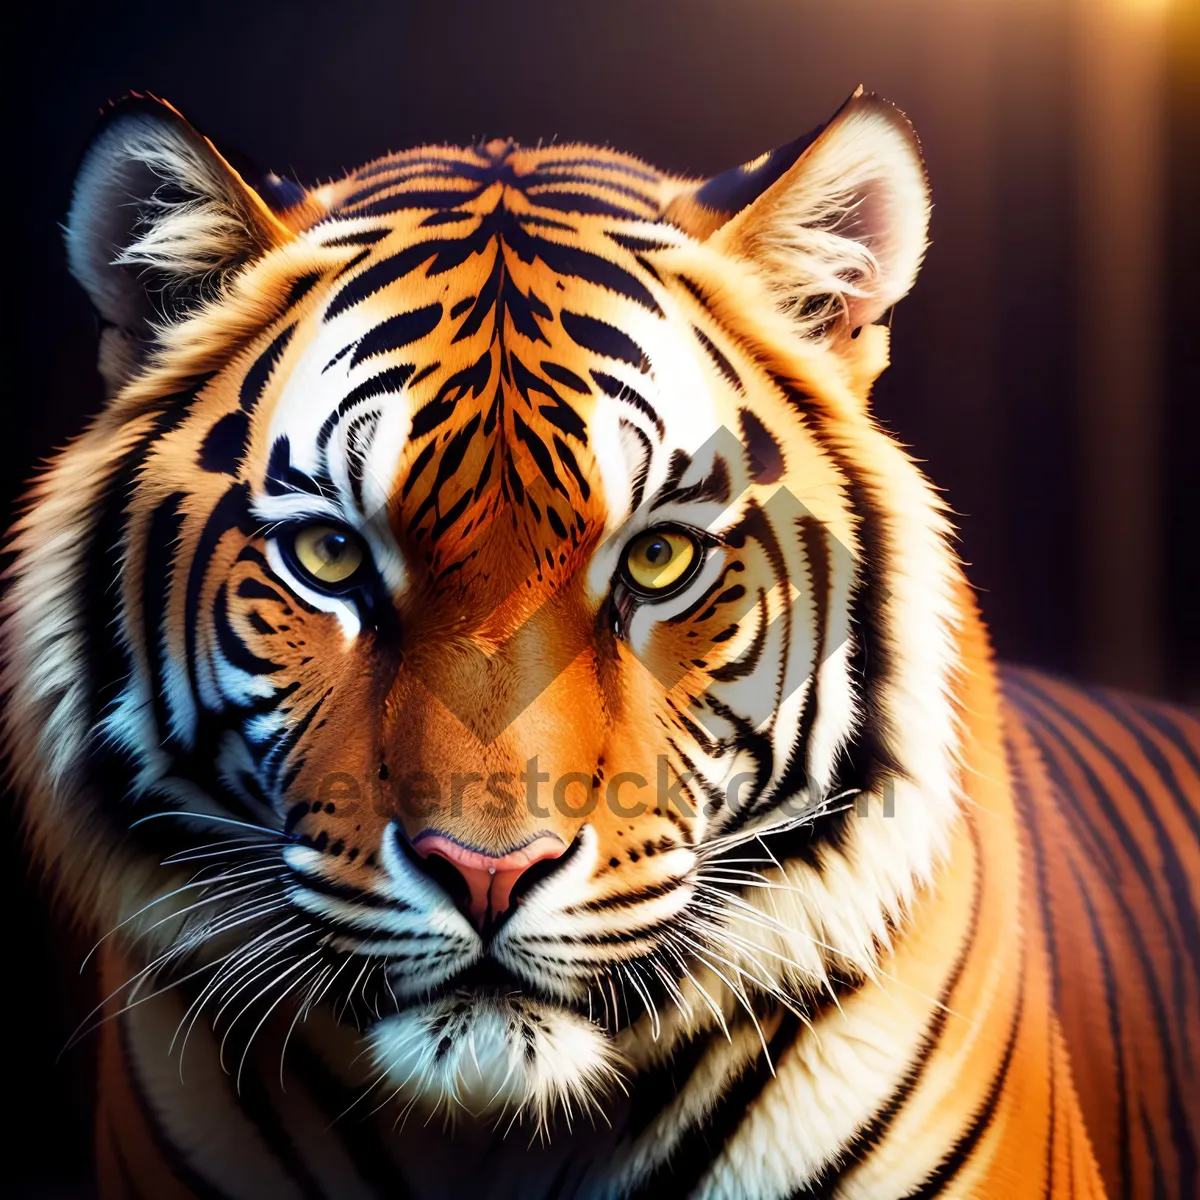 Picture of Majestic Tiger Cat in Wildlife Habitat.